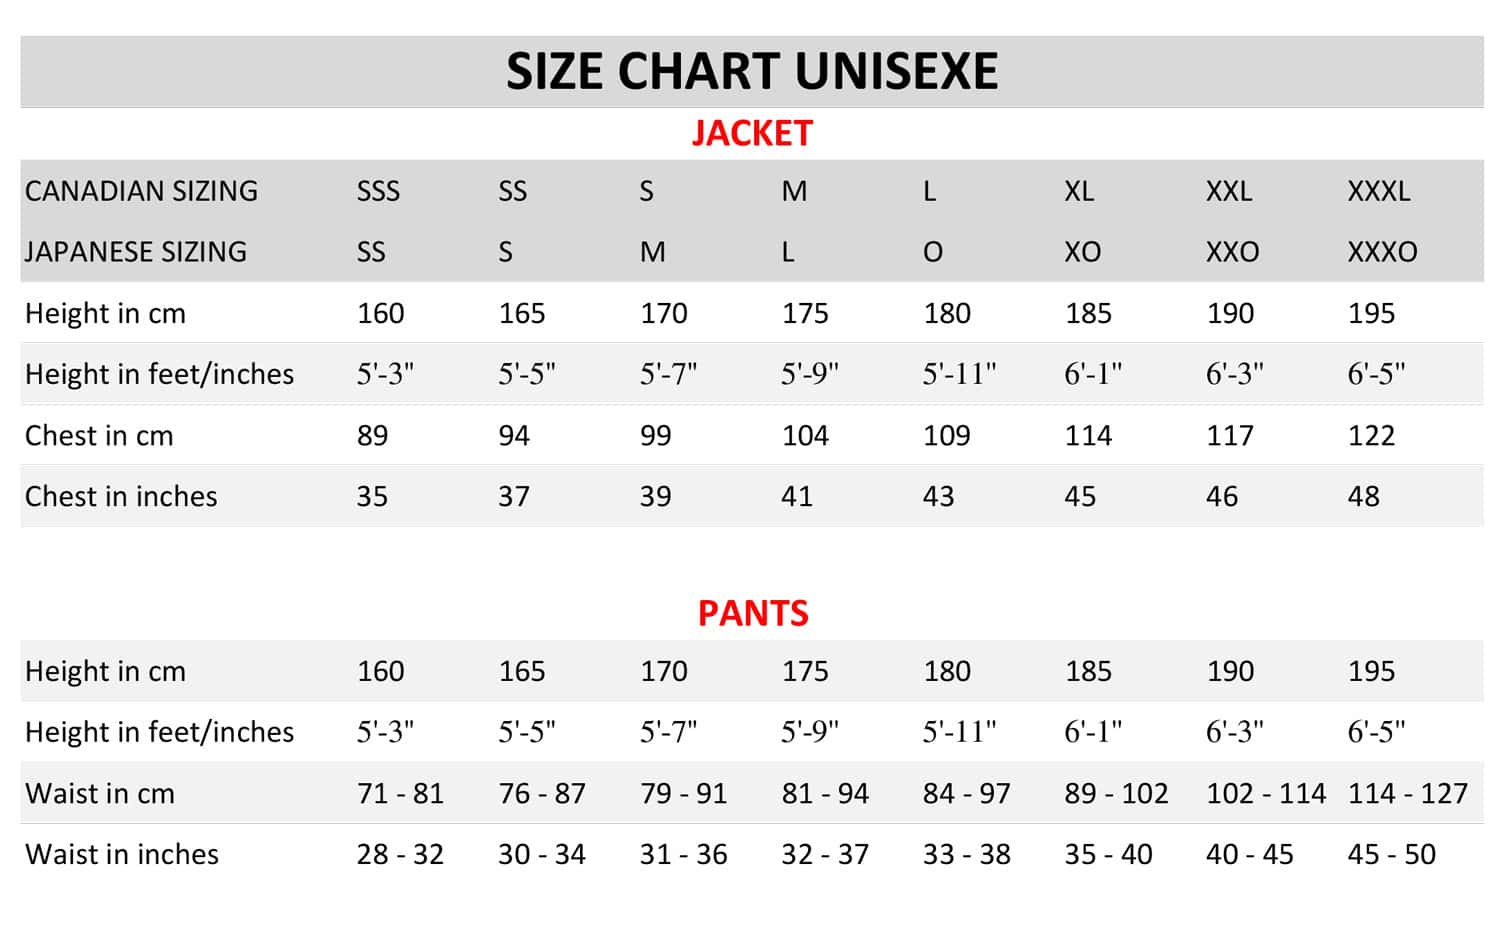 Size chart unisexe